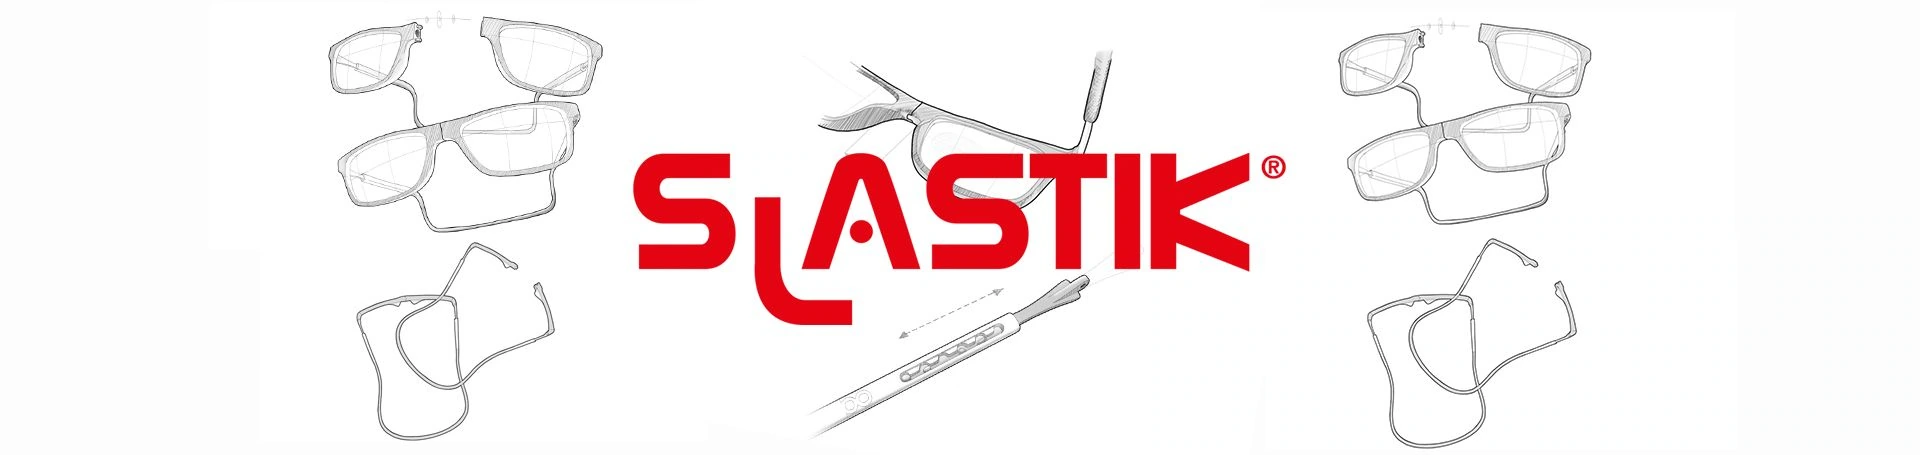 Slastik, proyecto de plataforma e-commerce y desarrollo de página web